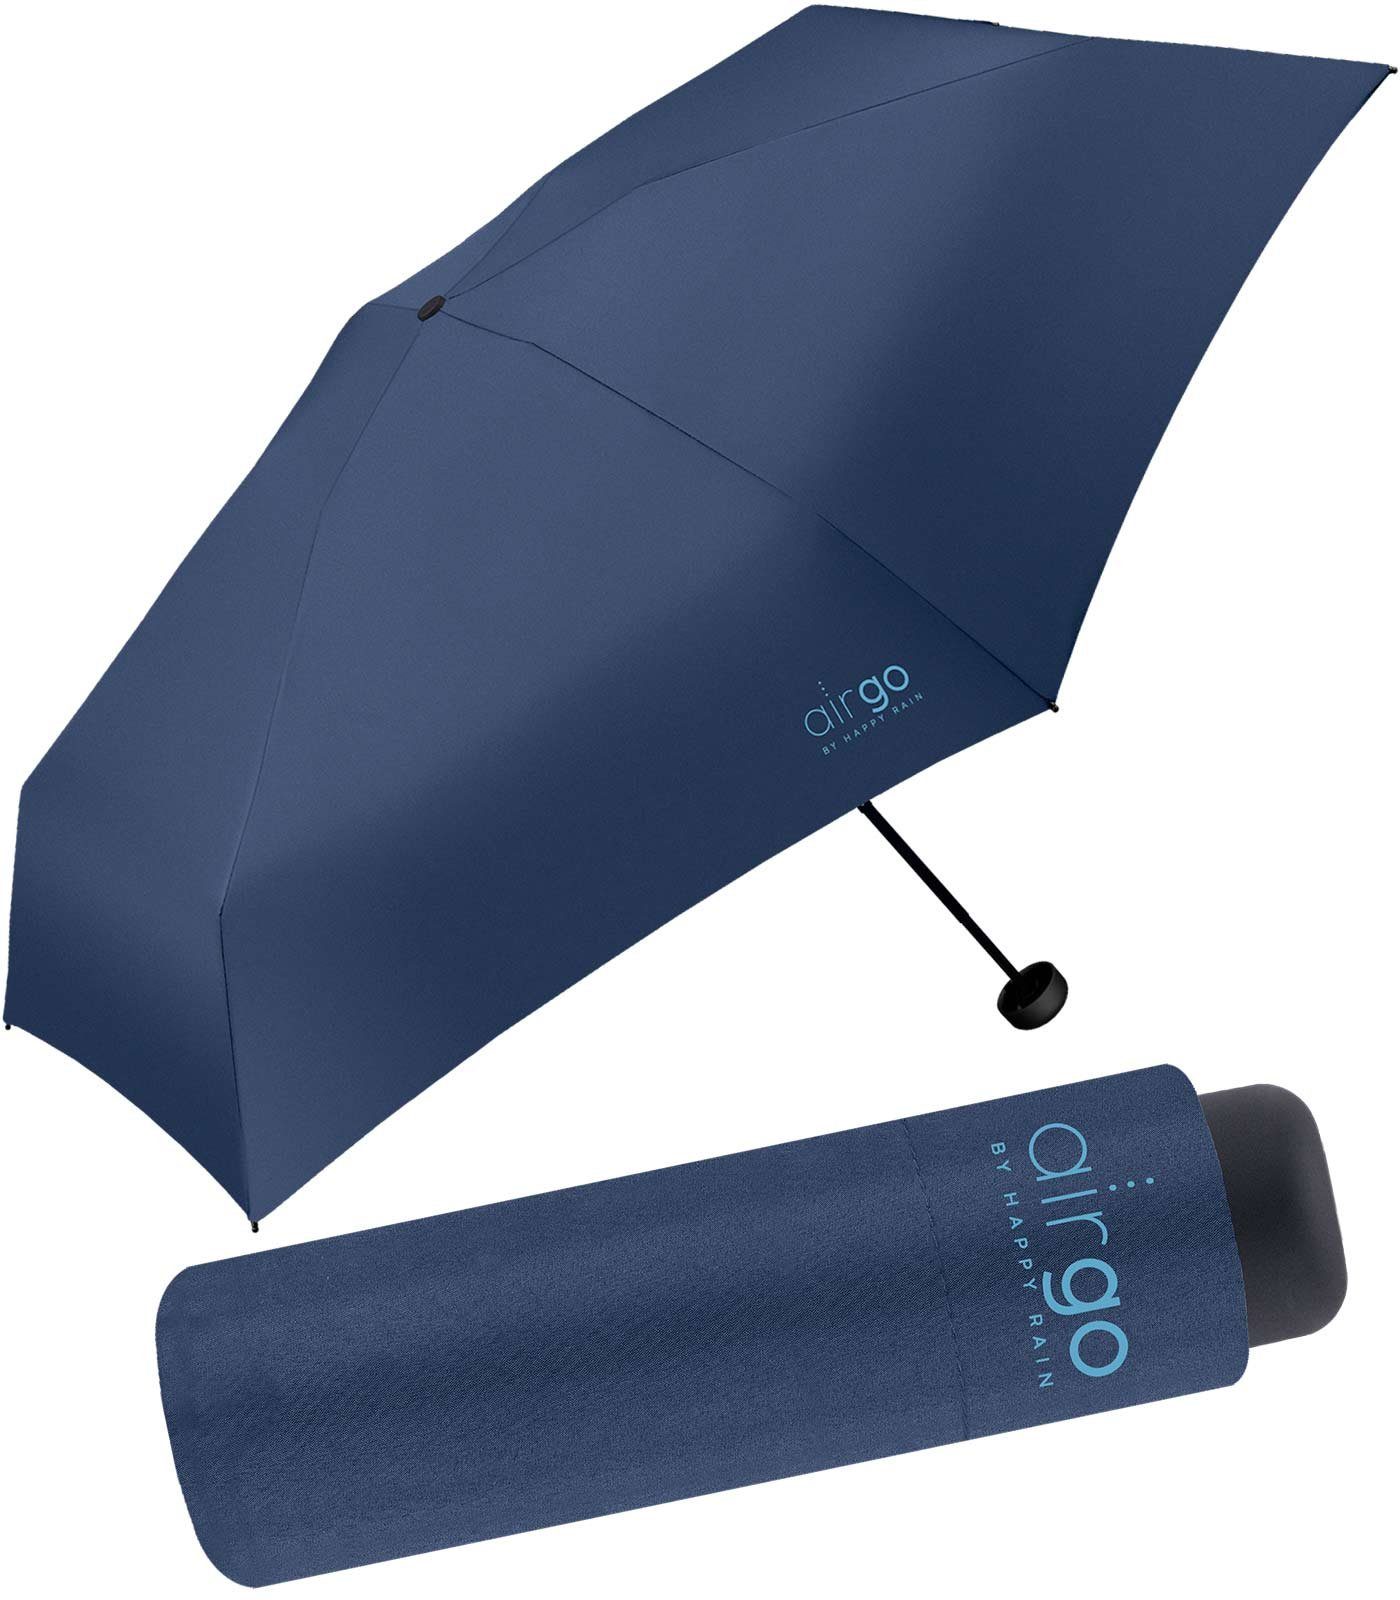 137 Handtasche für und Gramm HAPPY Supermini-Schirm Reisegepäck das - die Taschenregenschirm Air Go navy RAIN perfekt superleicht,